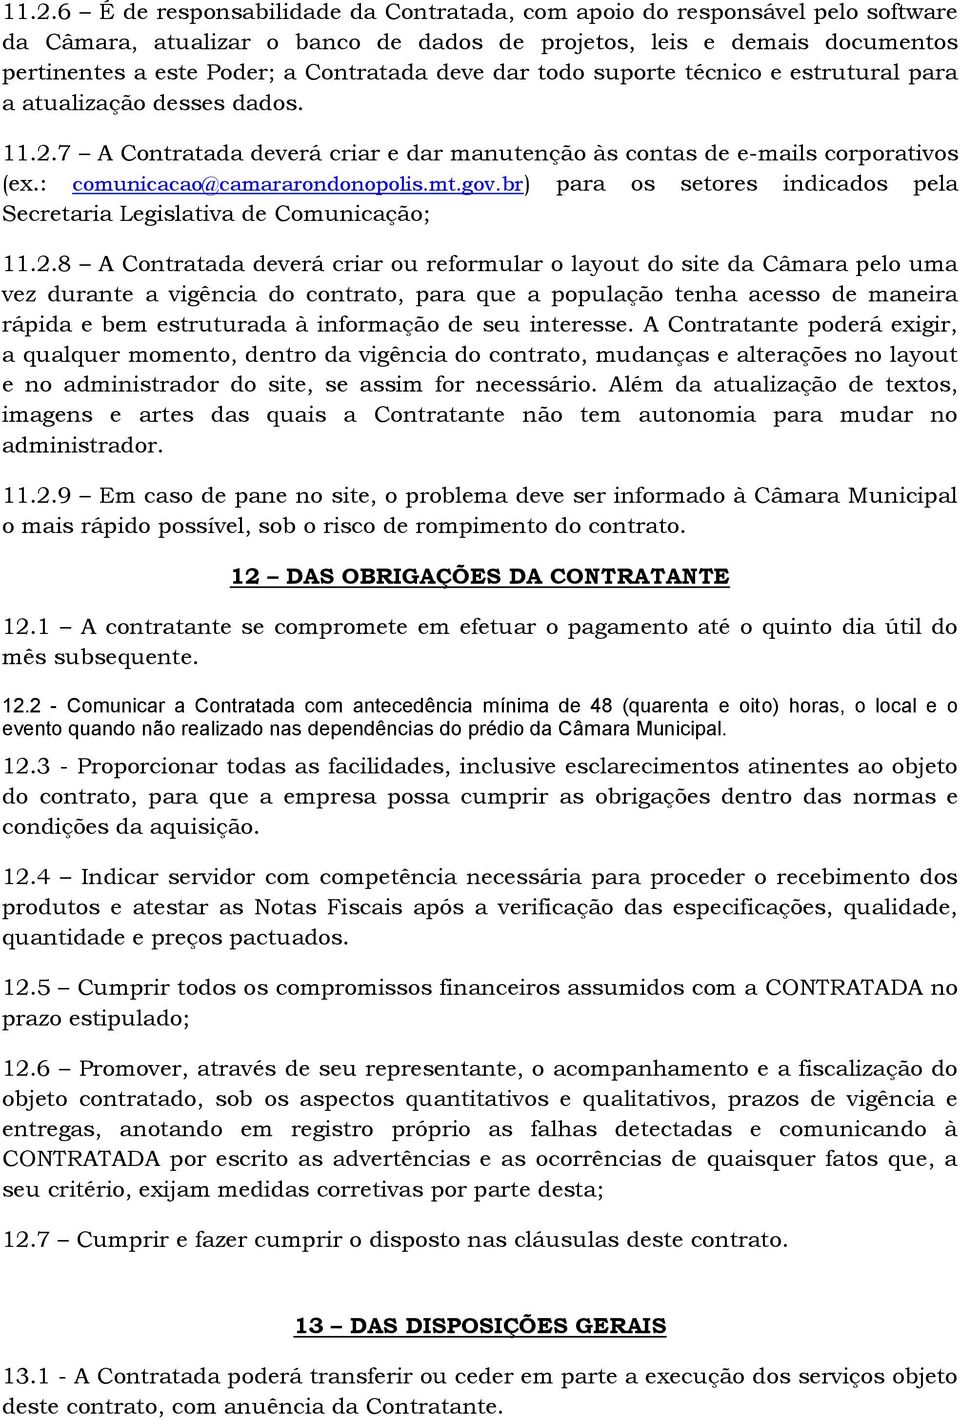 gov.br) para os setores indicados pela Secretaria Legislativa de Comunicação; 11.2.